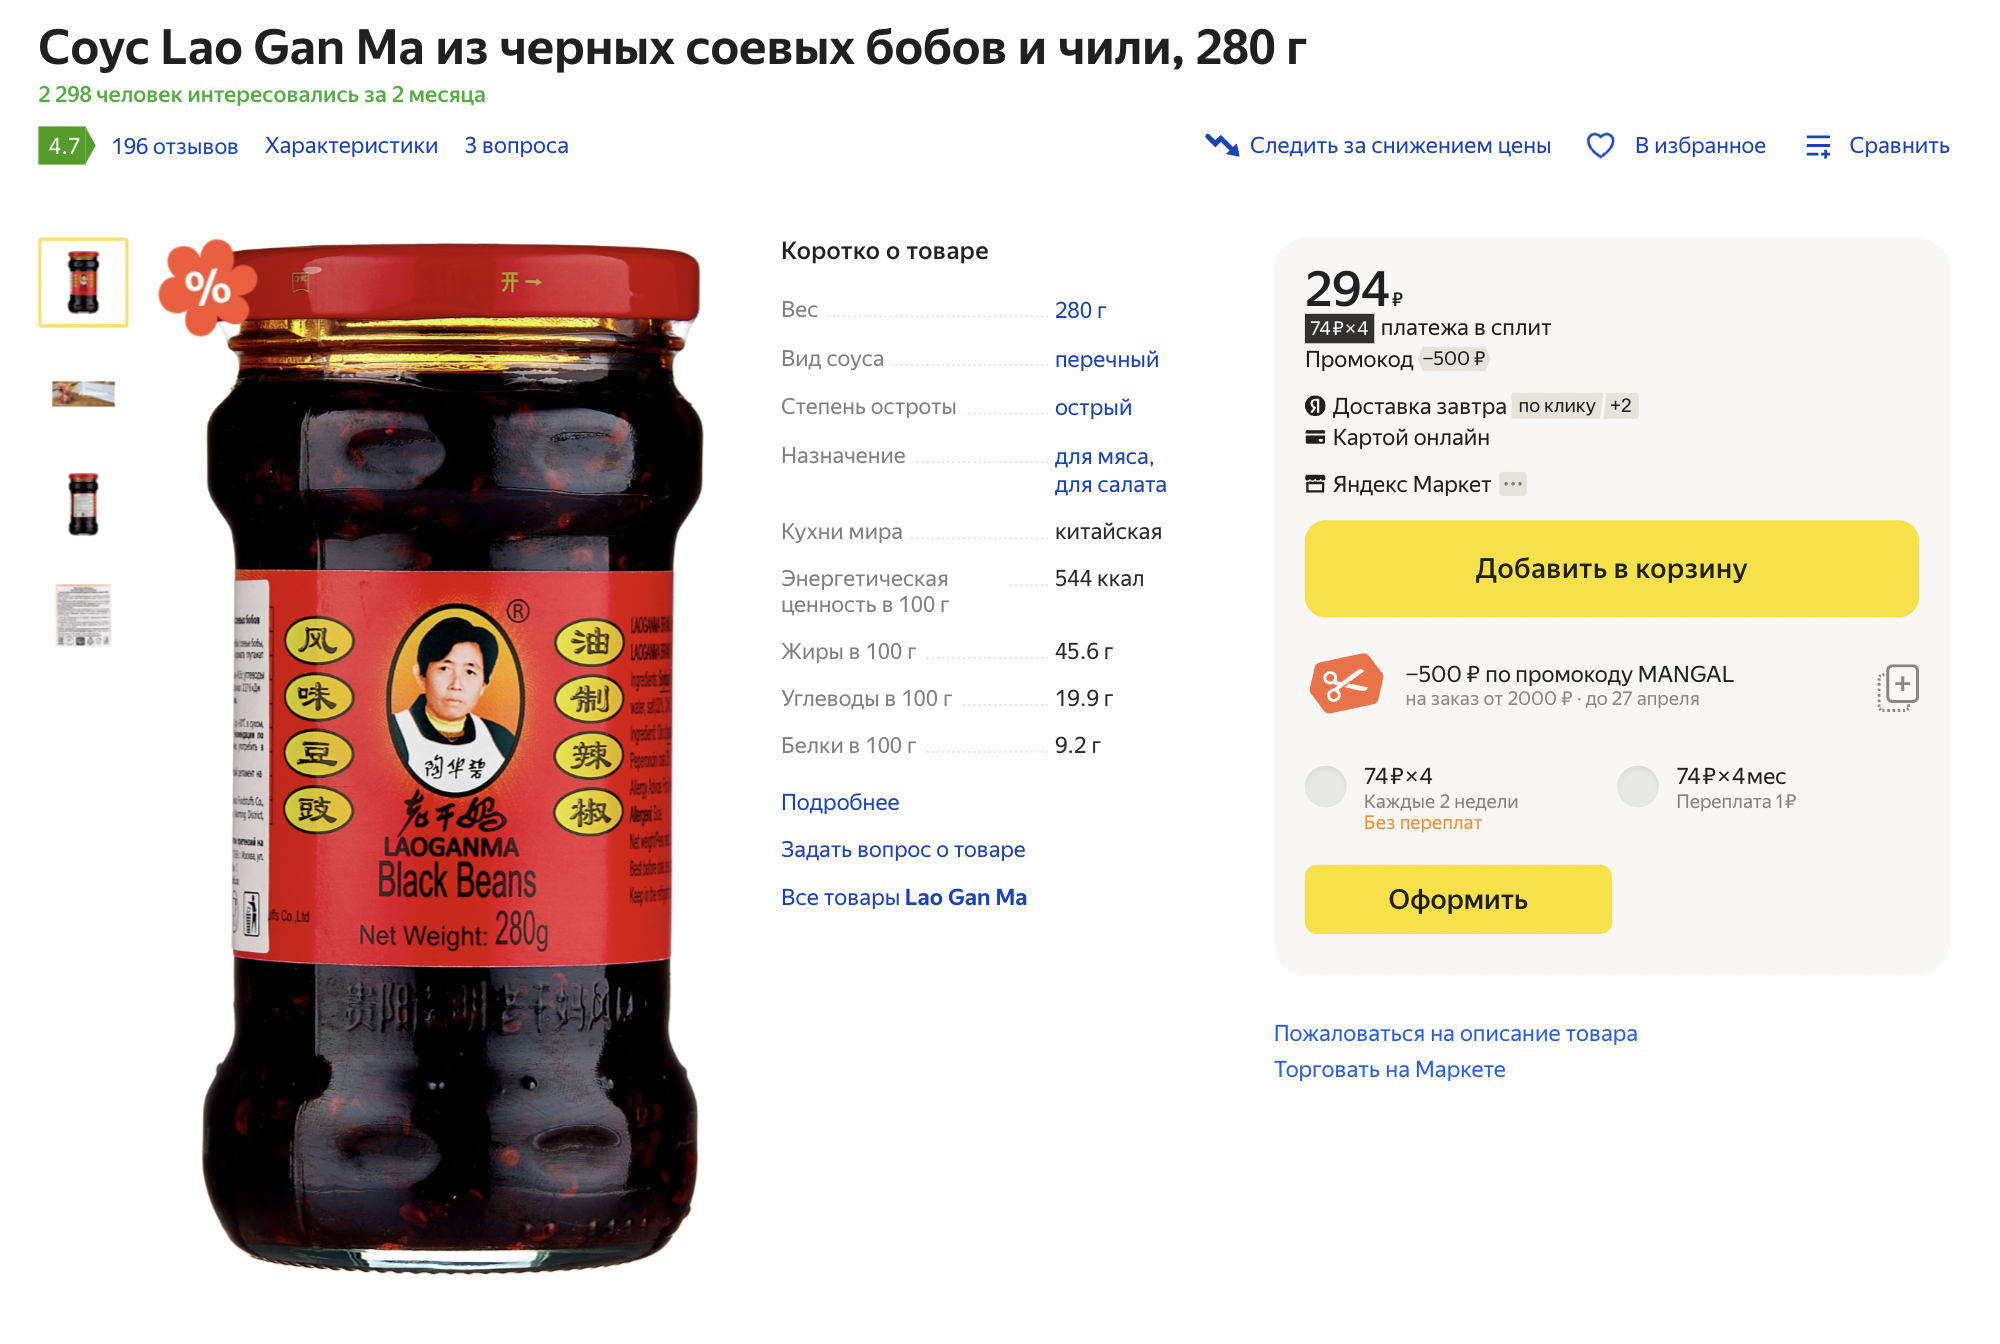 Этот вариант соуса менее острый и более хрустящий. Источник: market.yandex.ru